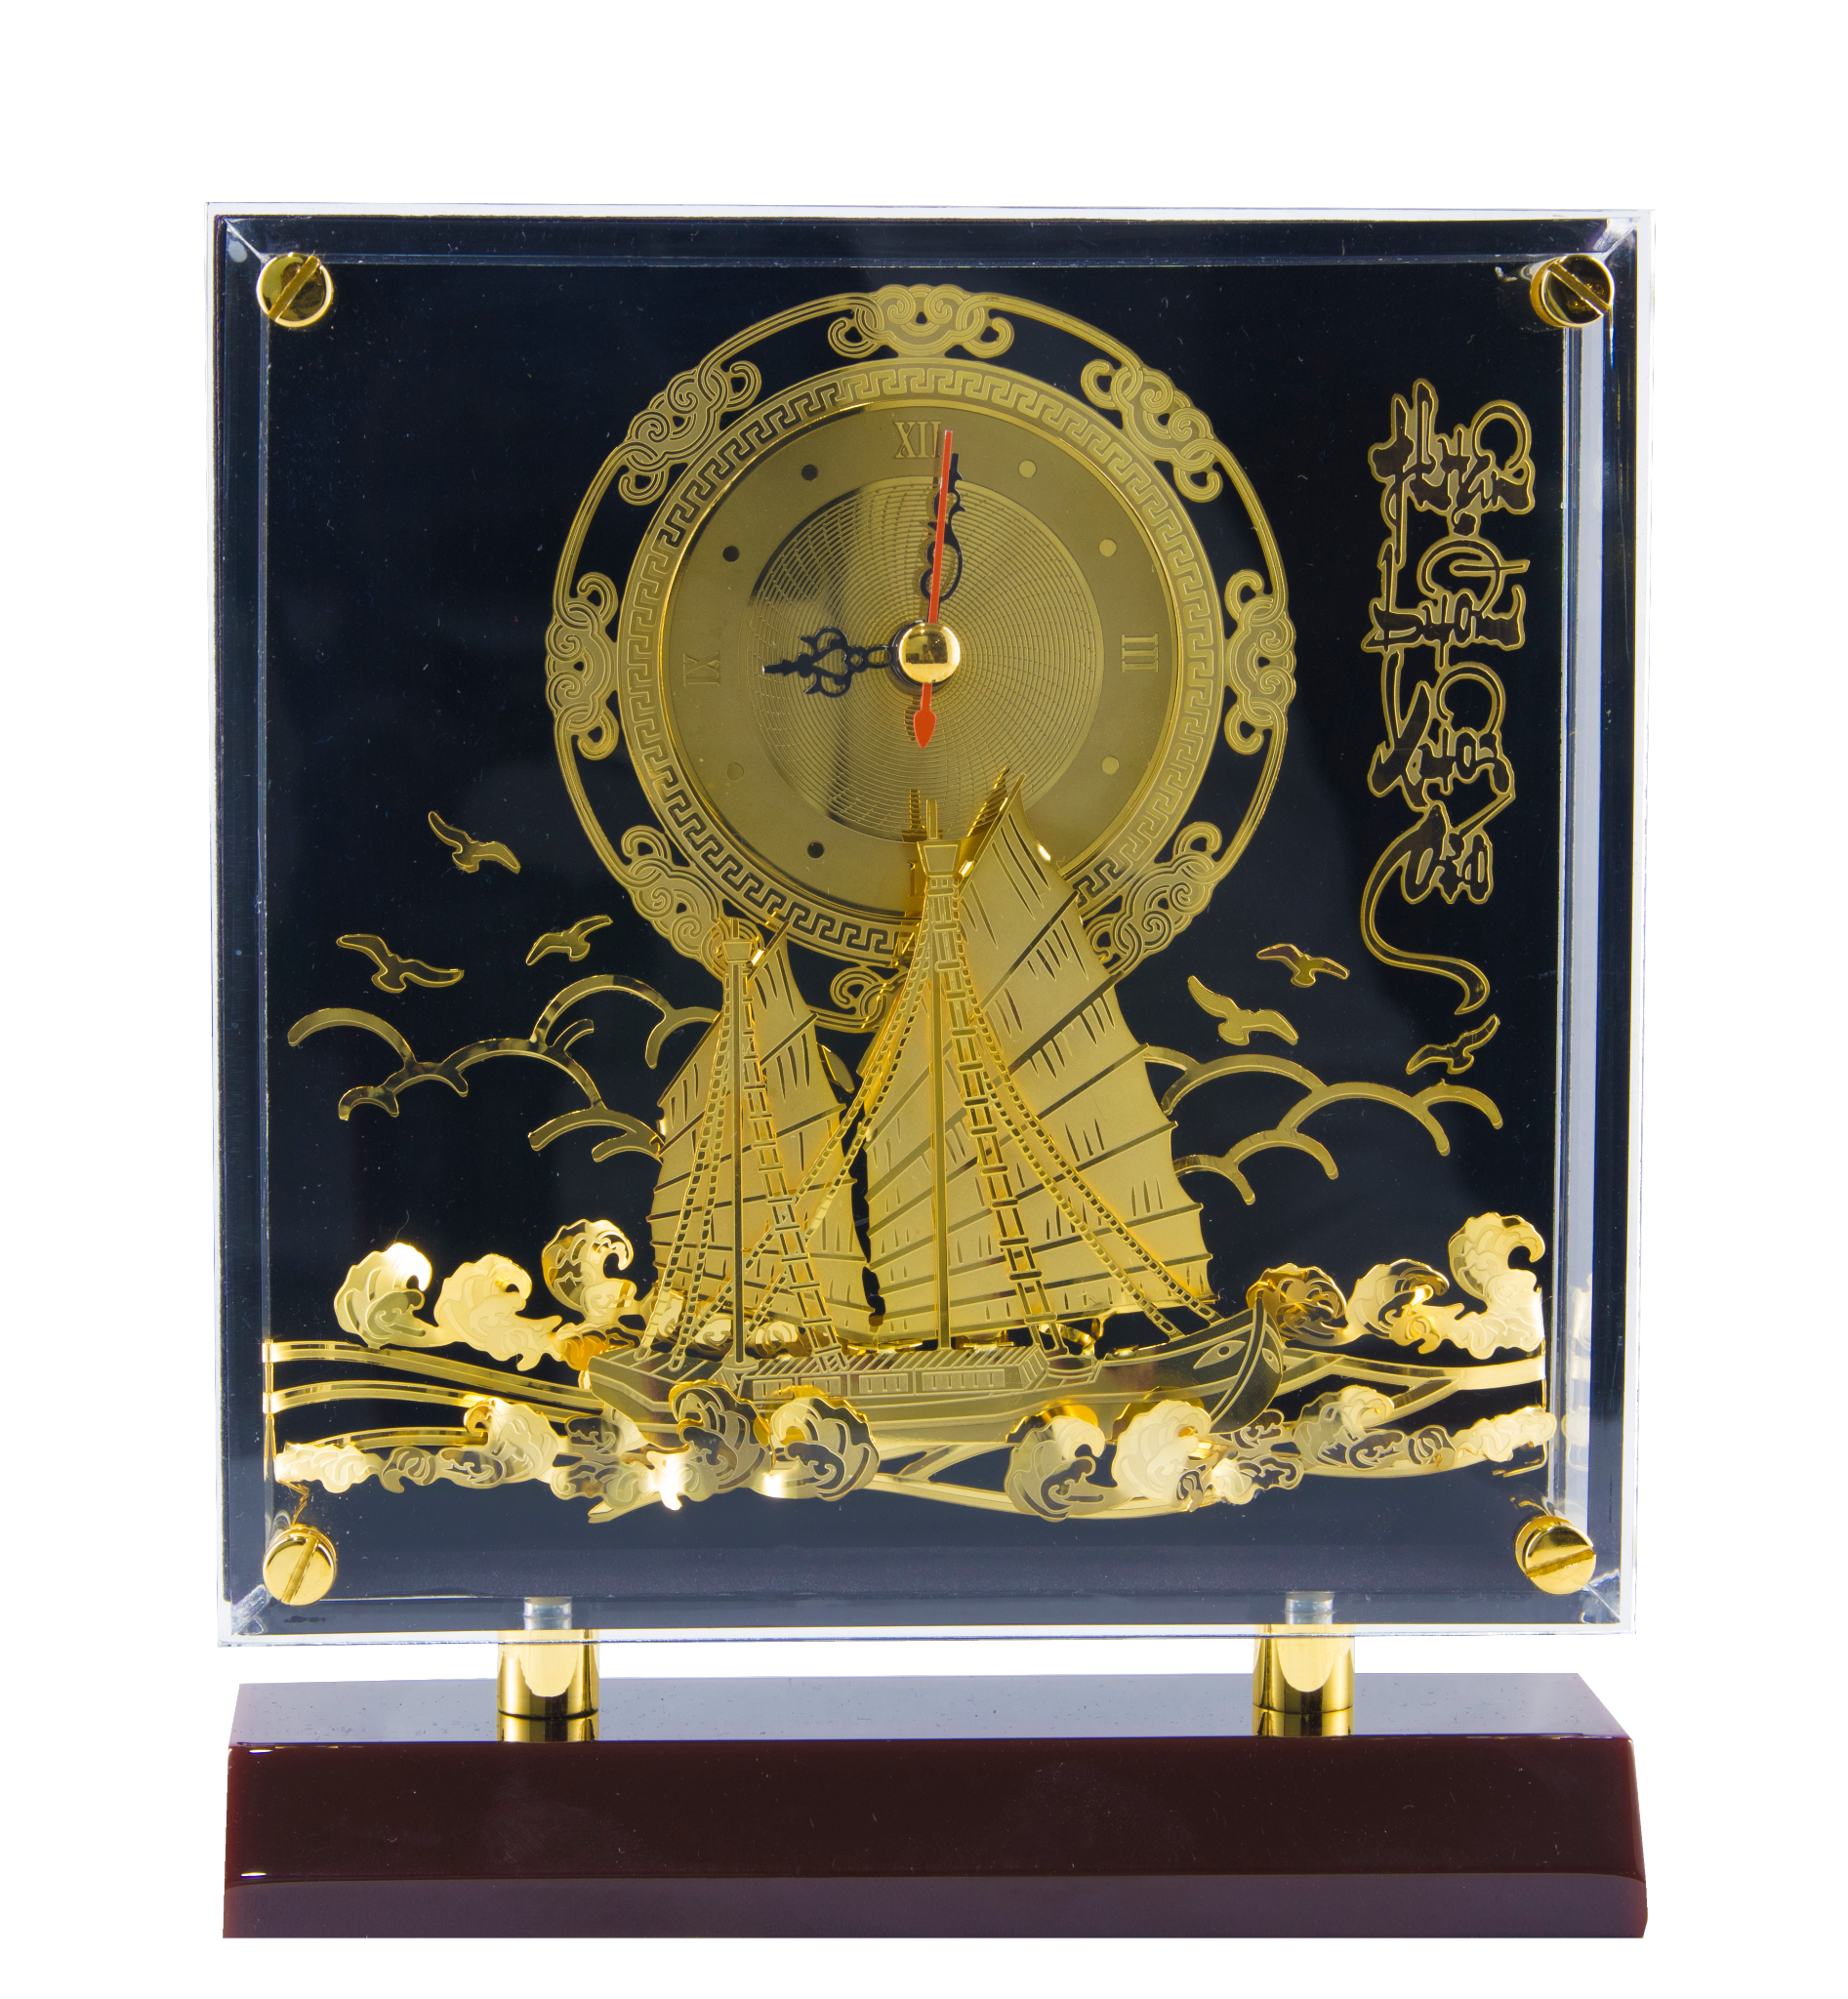  Tranh mica đồng hồ Thuận Buồm Xuôi Gió 19x16cm, đồng mạ vàng 